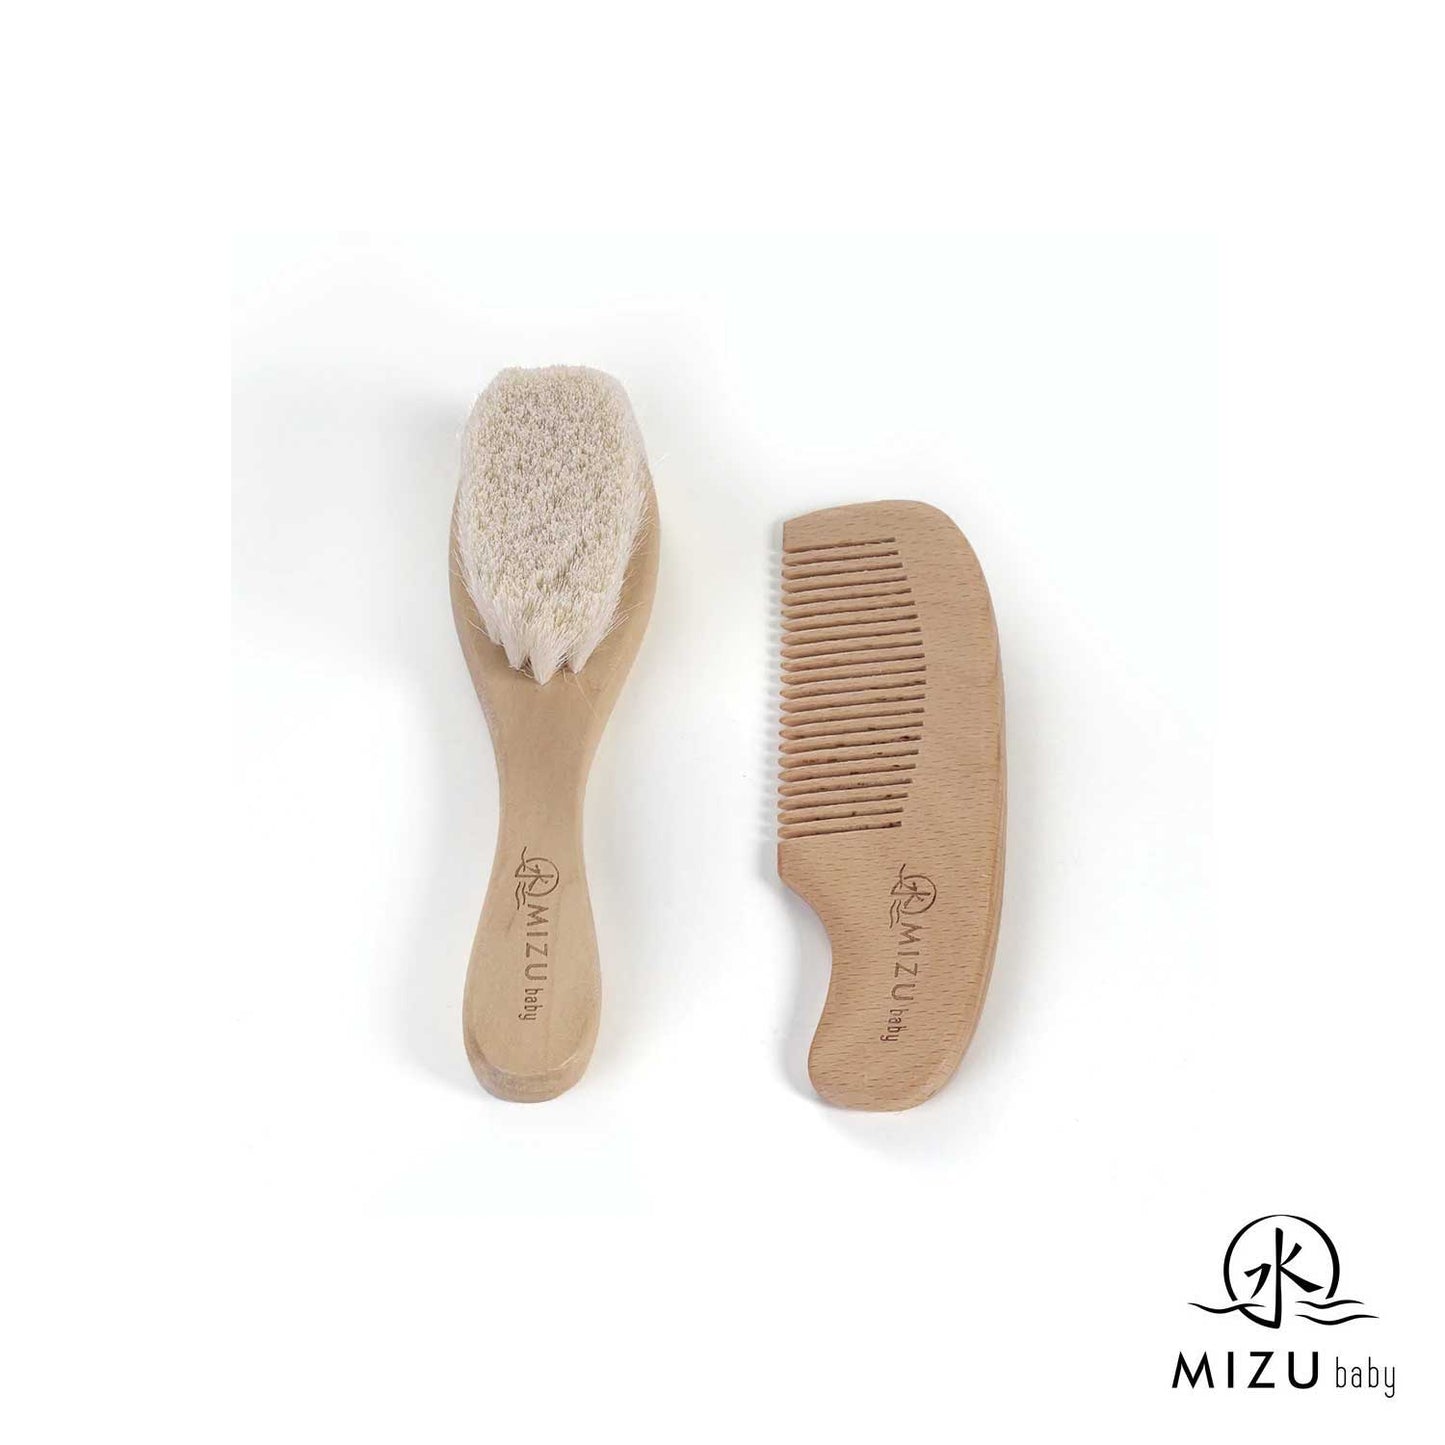 Mizu - Mami Bamboo brush and comb set